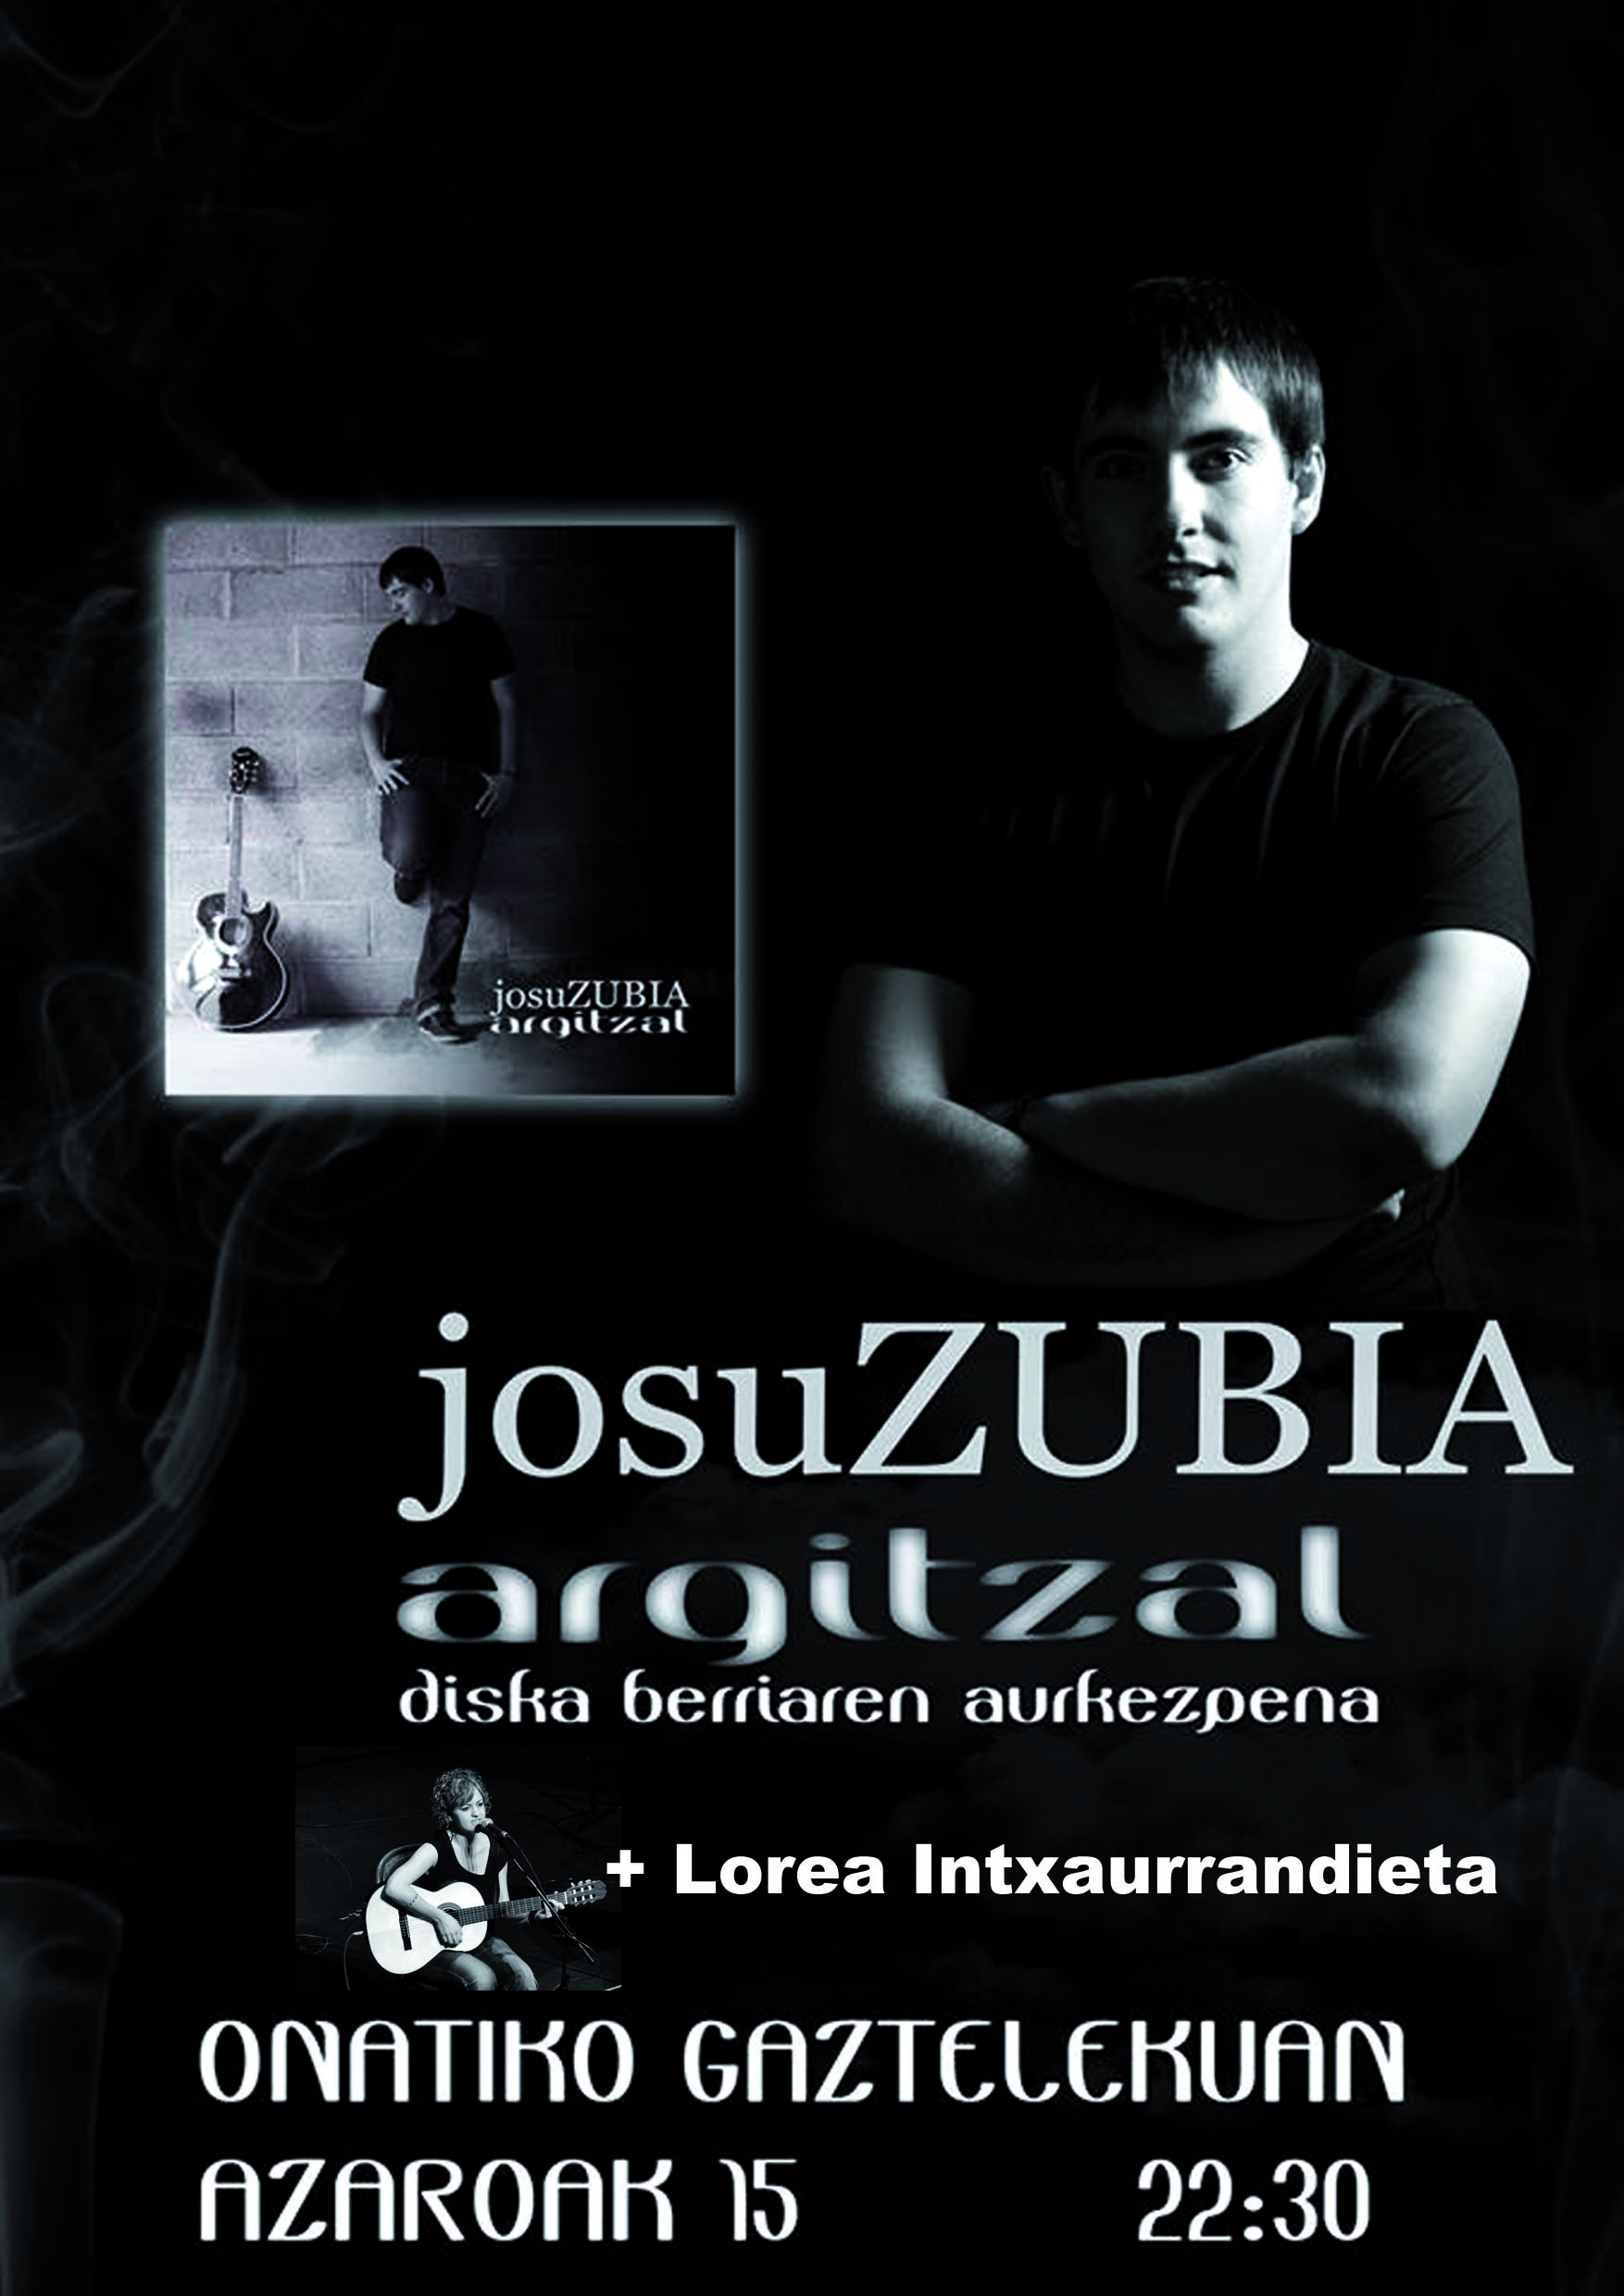 2013 11 15 Josu Zubia Argitzal-web.jpg